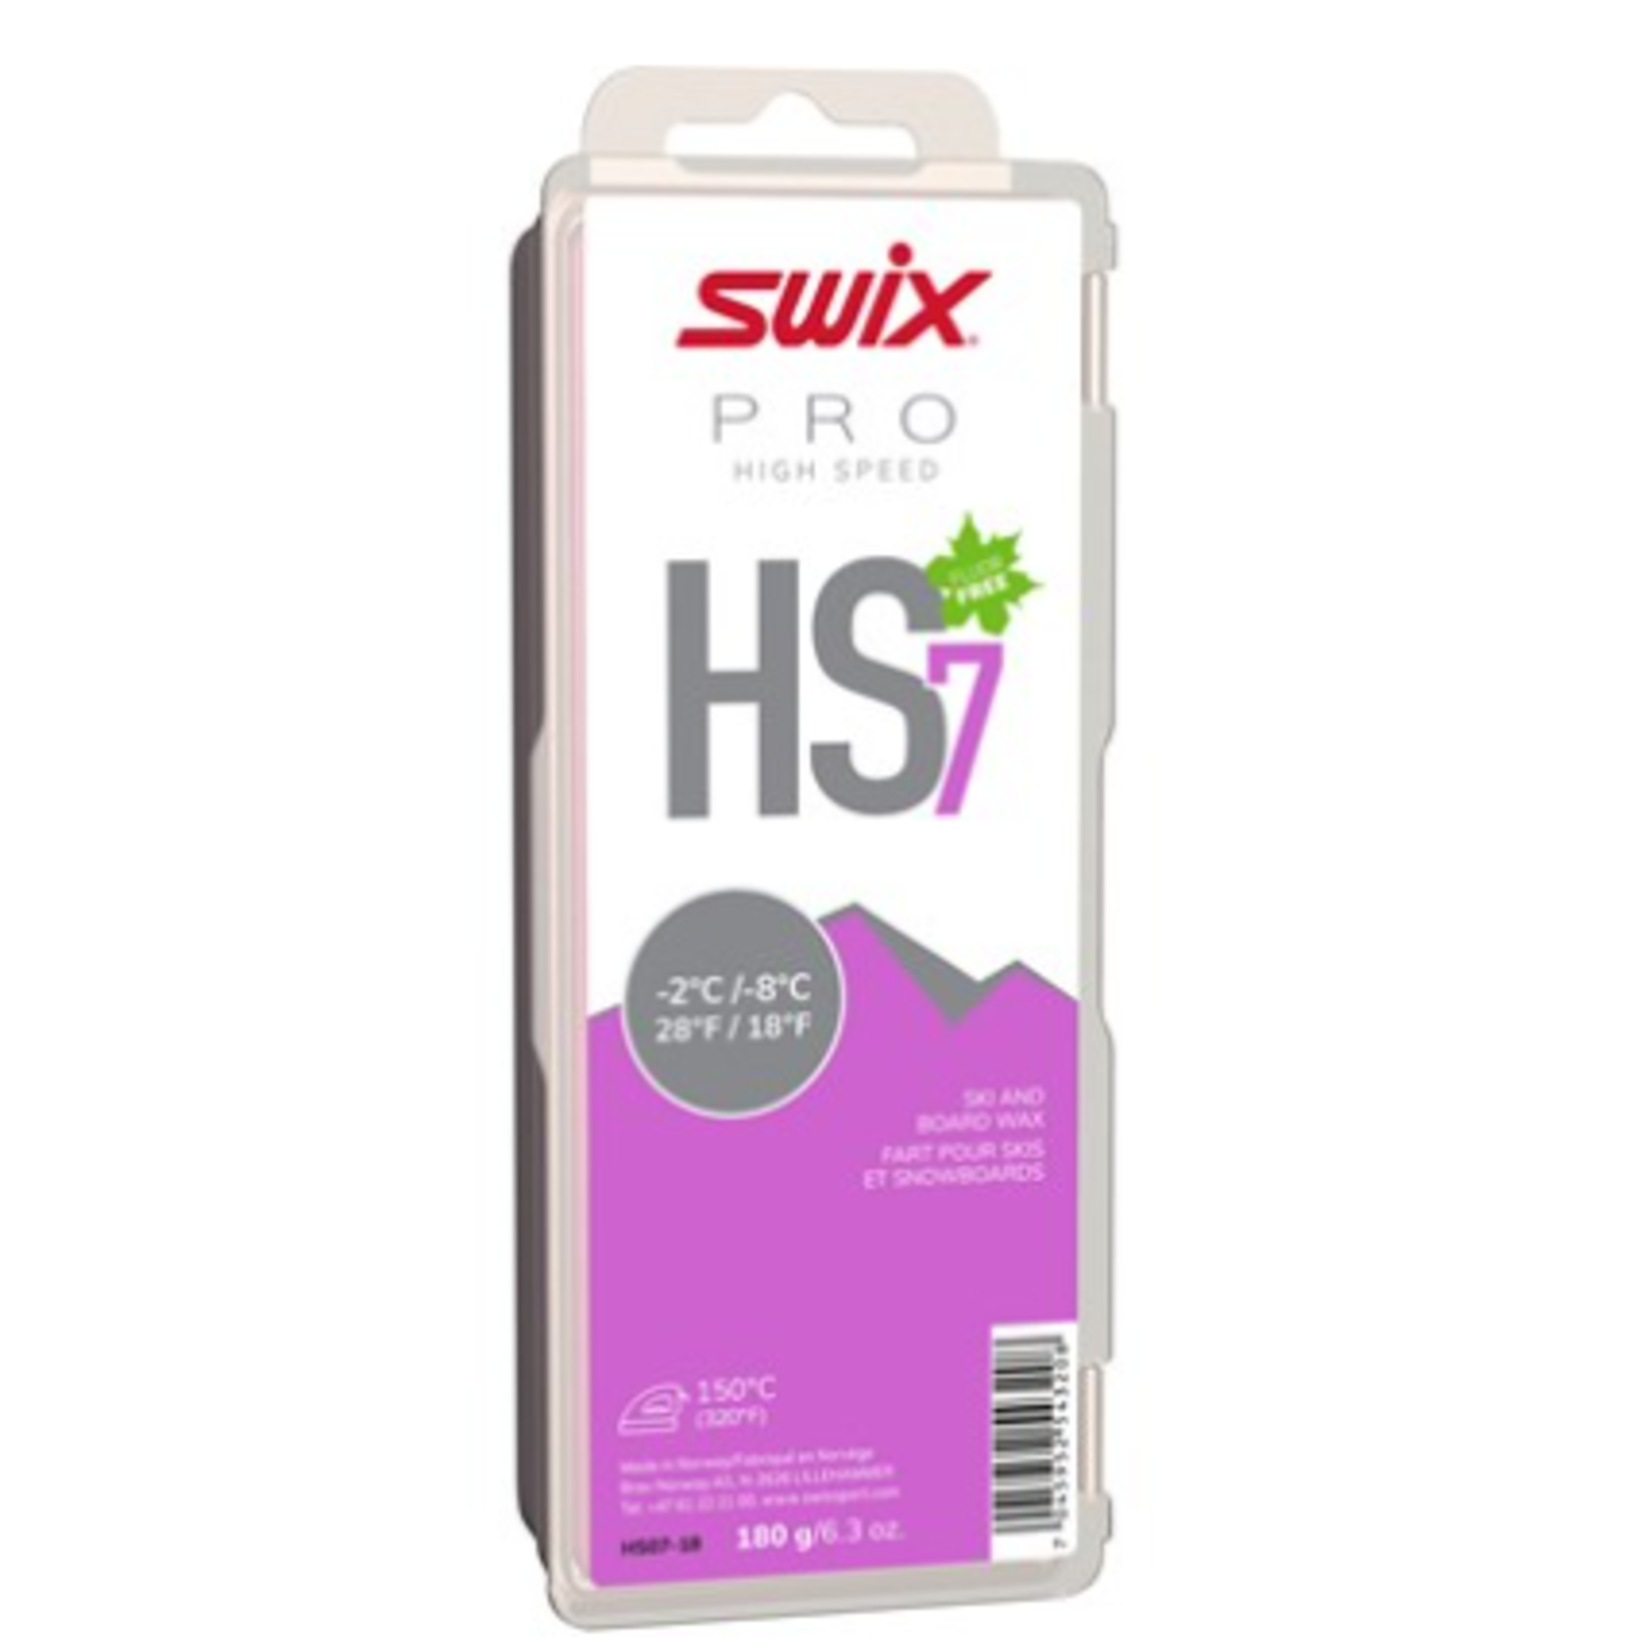 Swix Swix HS7 Violet, -2°C/-8°C, 180g